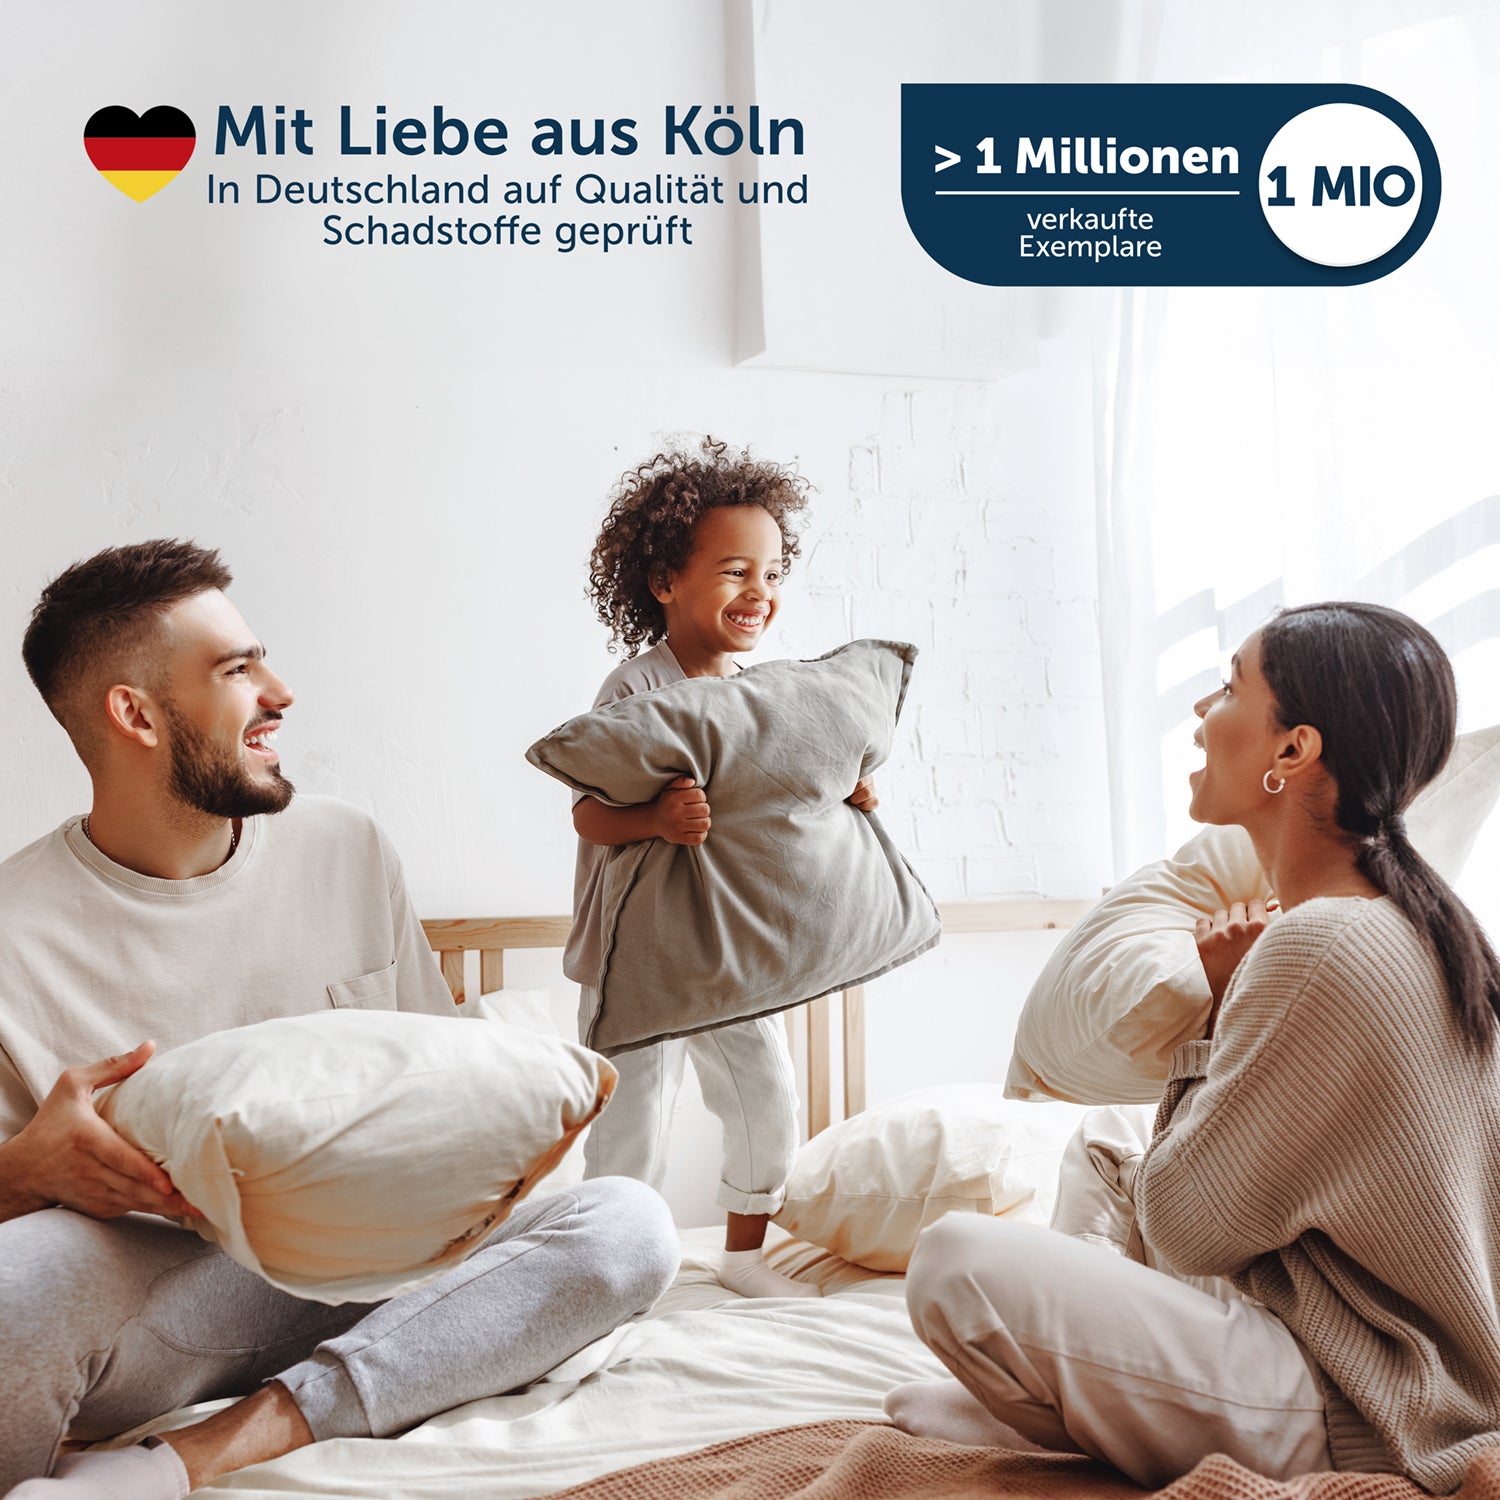 Familie mit zwei Erwachsenen und einem Kind, die auf einem Bett mit weißen Kissen spielen, mit Text &quot;Mit Liebe aus Köln&quot; und Hinweis auf eine Million verkaufte Exemplare.